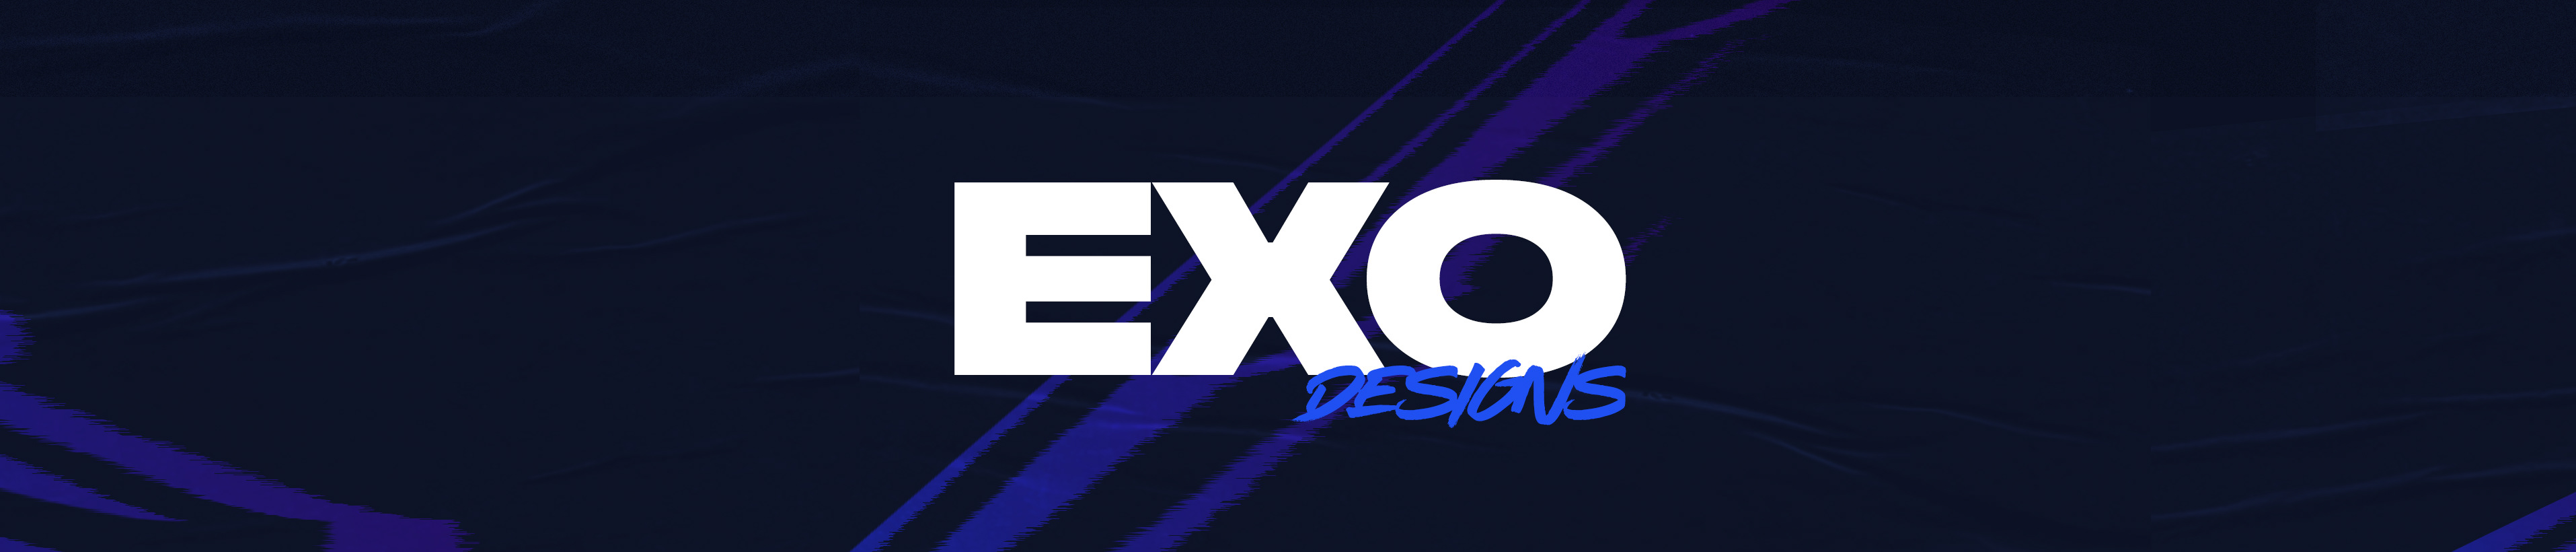 Exo Designs's profile banner